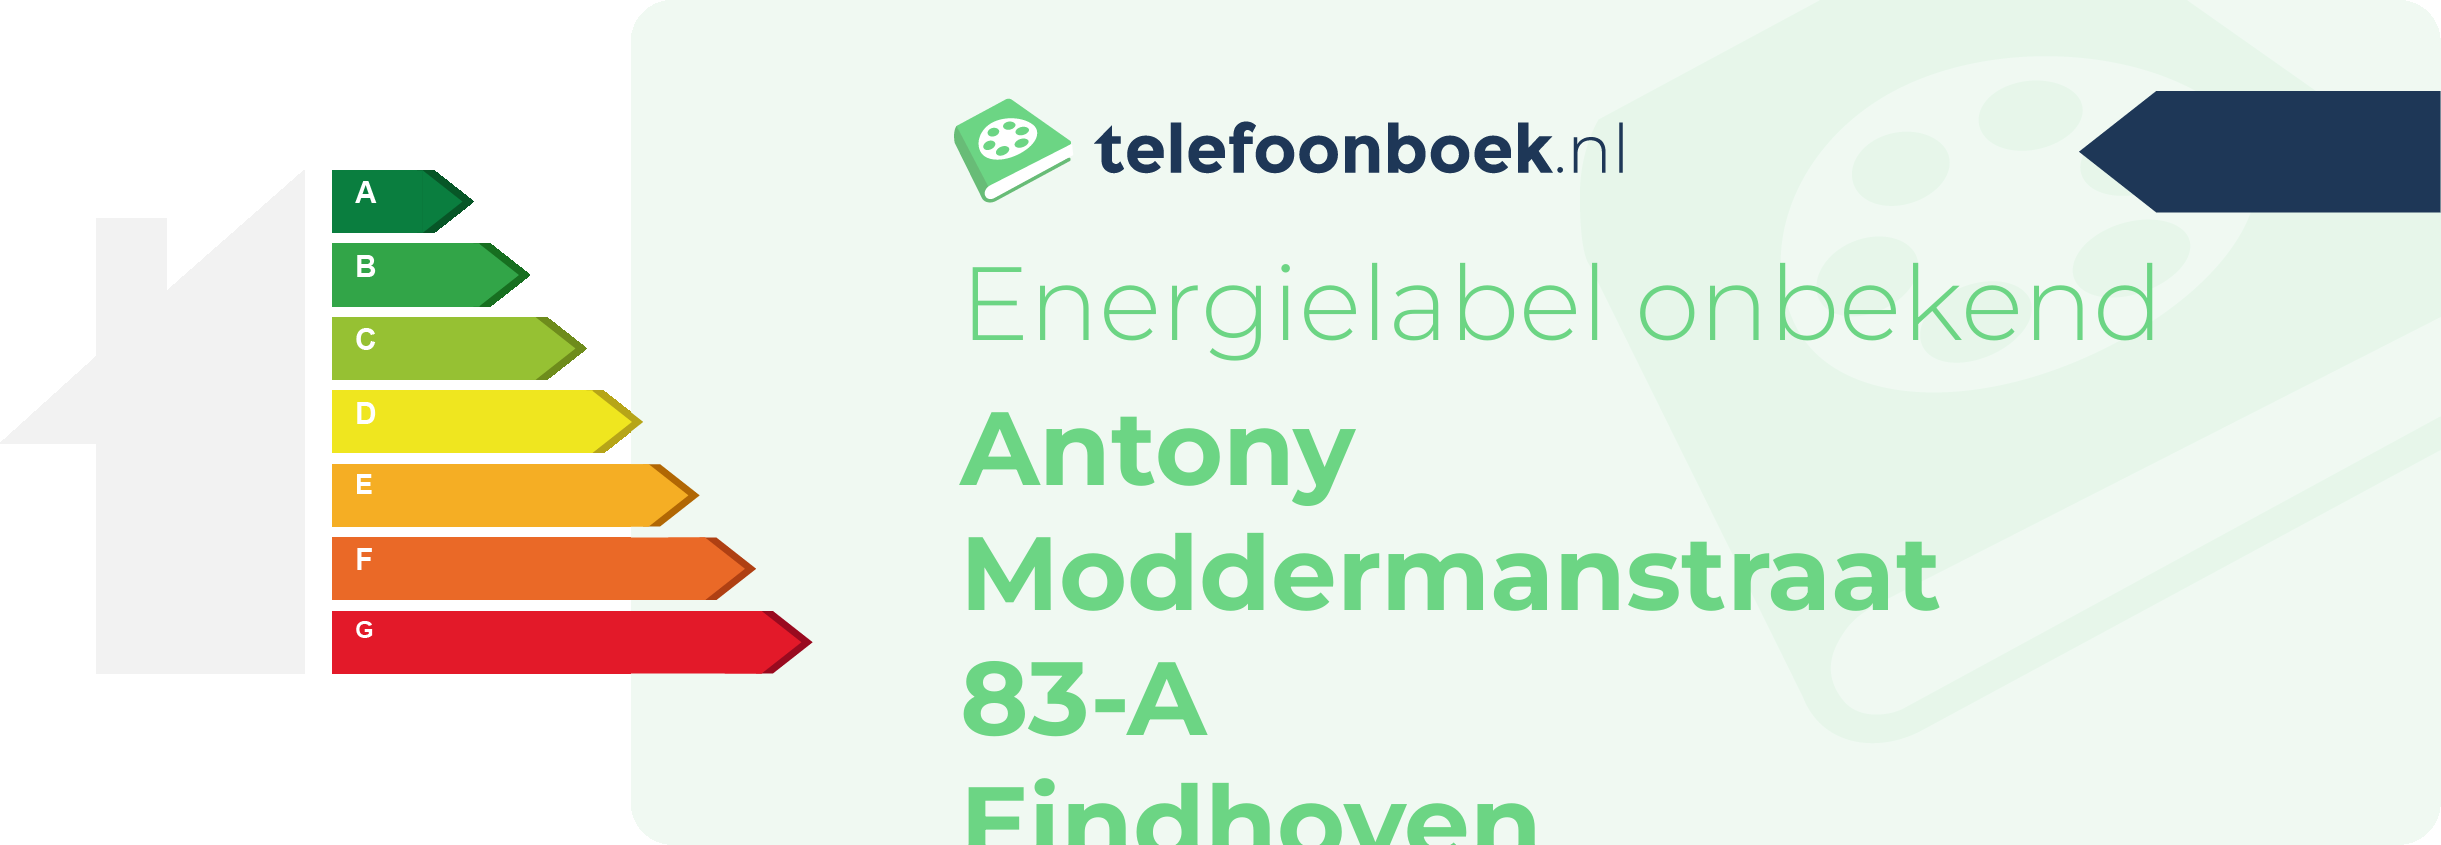 Energielabel Antony Moddermanstraat 83-A Eindhoven